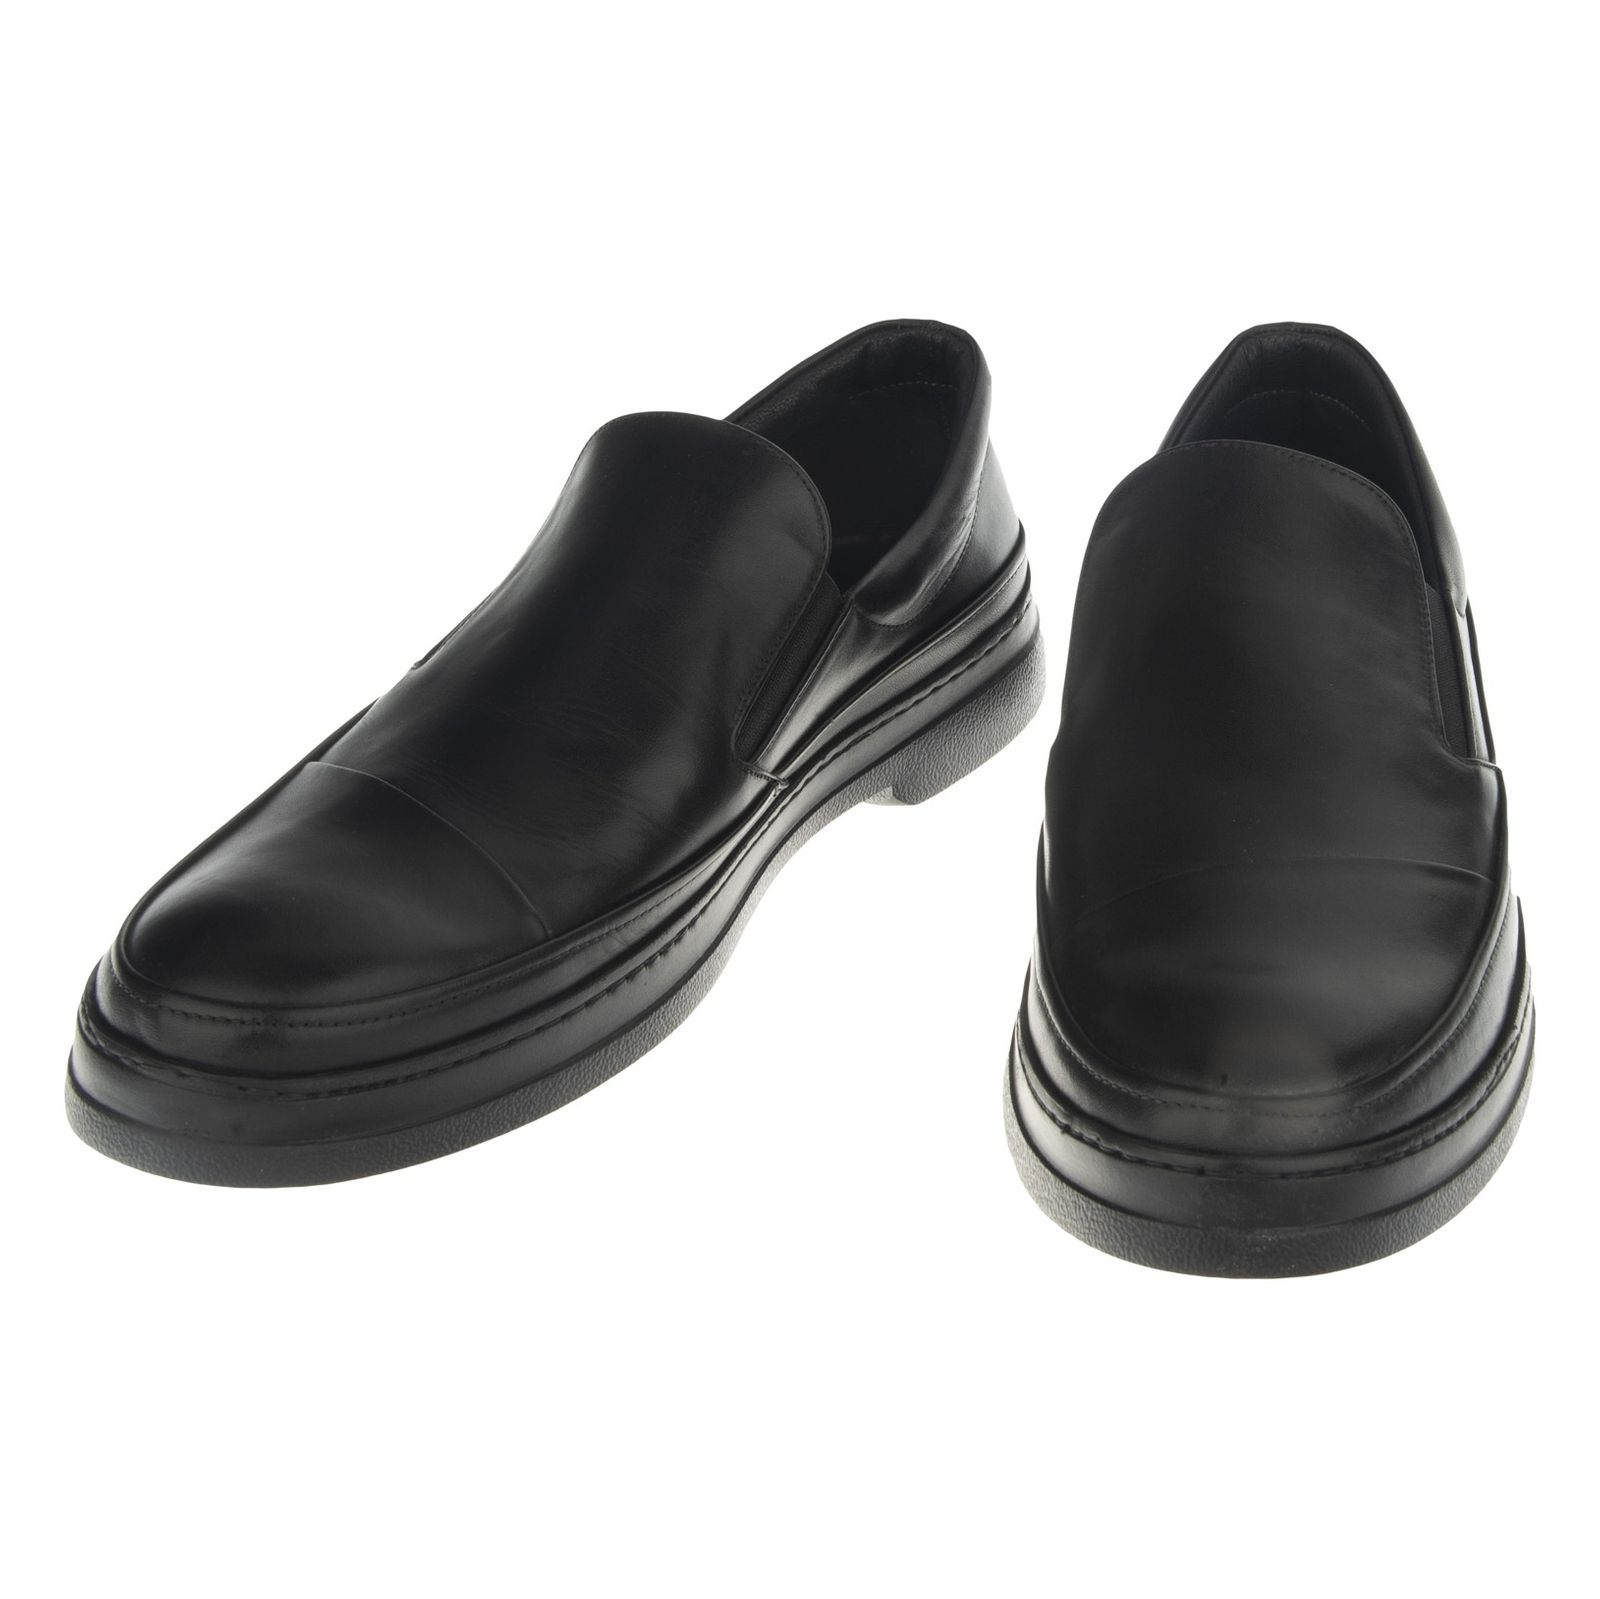 کفش روزمره مردانه اورسی مدل 710-27 - مشکی - 6